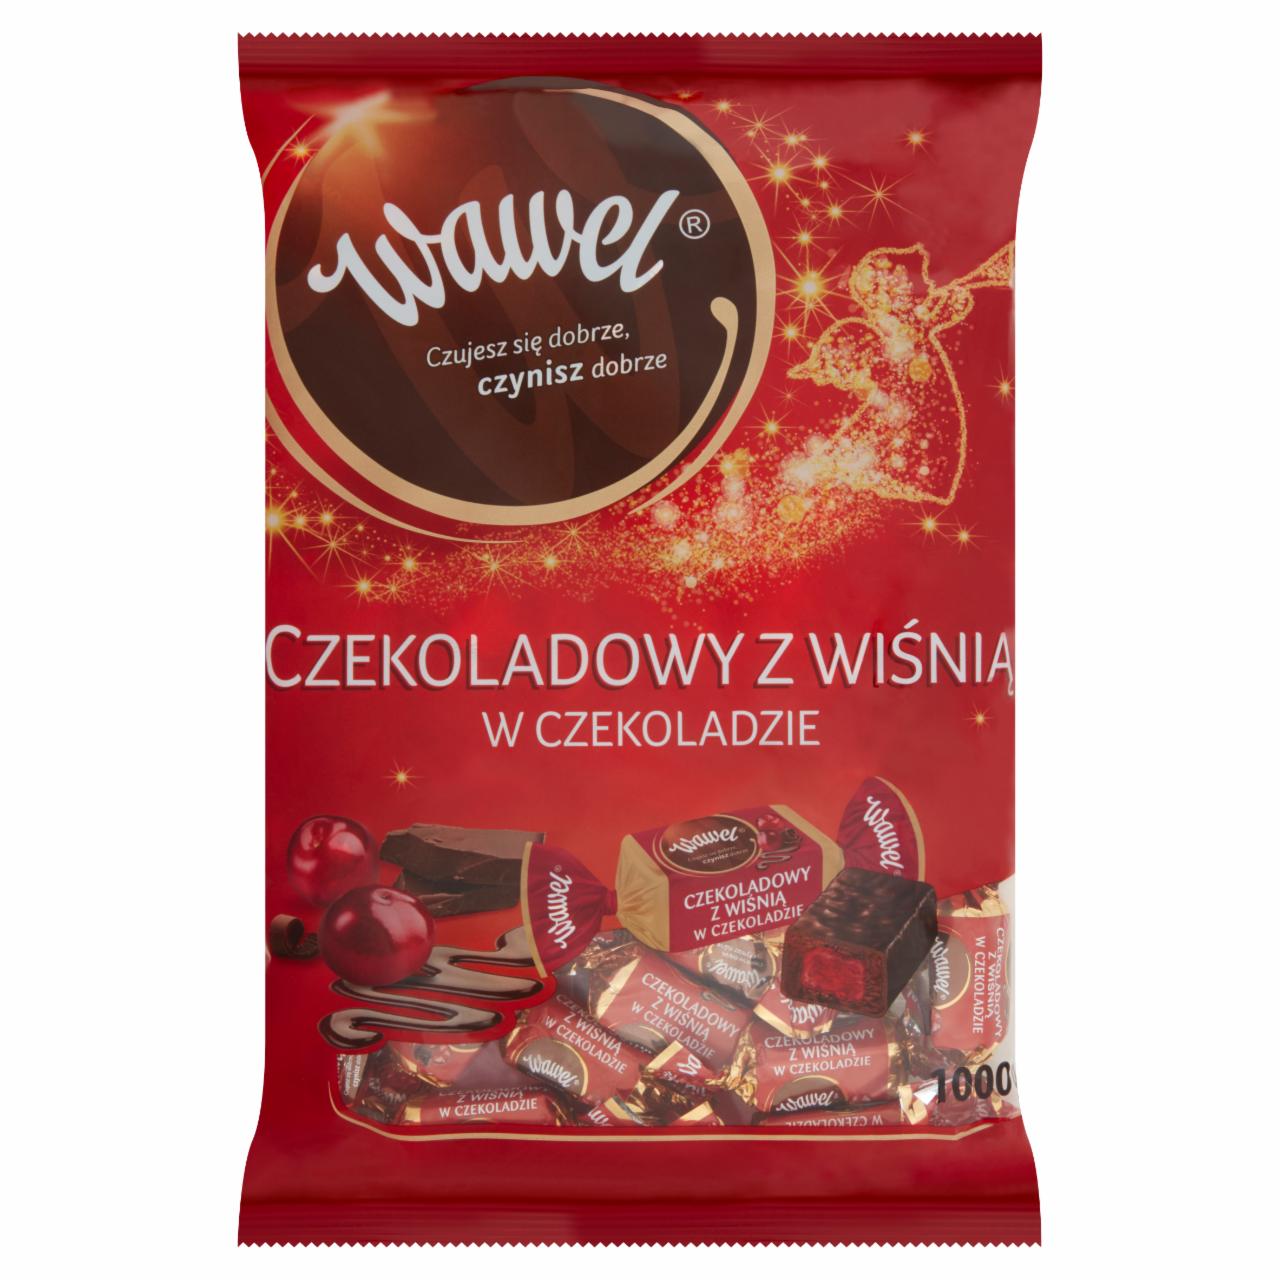 Zdjęcia - Wawel Czekoladowy z wiśnią w czekoladzie Cukierki 1000 g